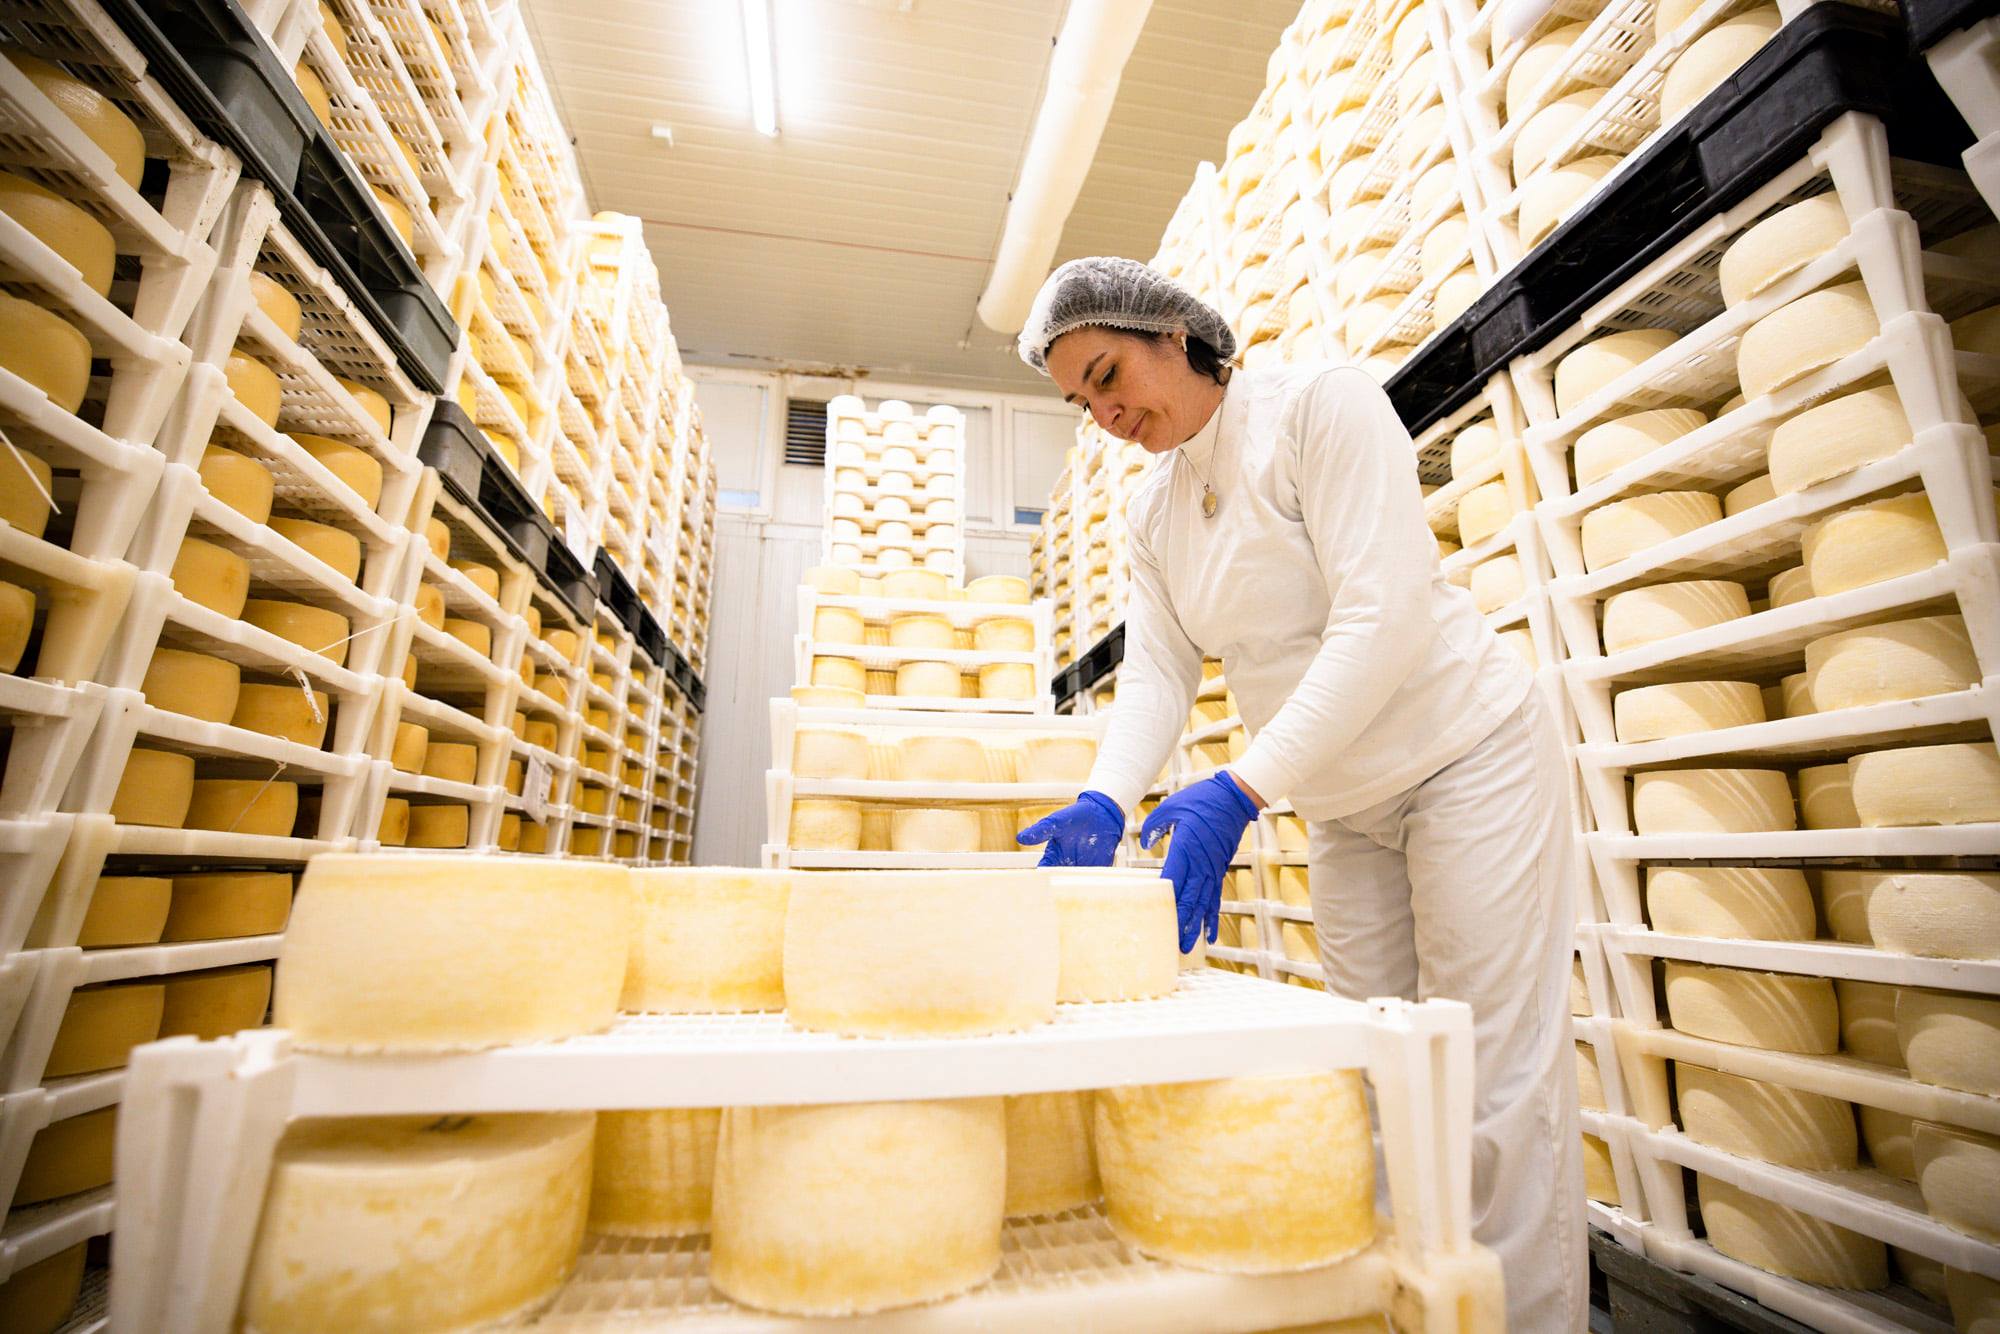 Cheeses from Croatia's Gligora awarded at UK's Great Taste Awards 2021